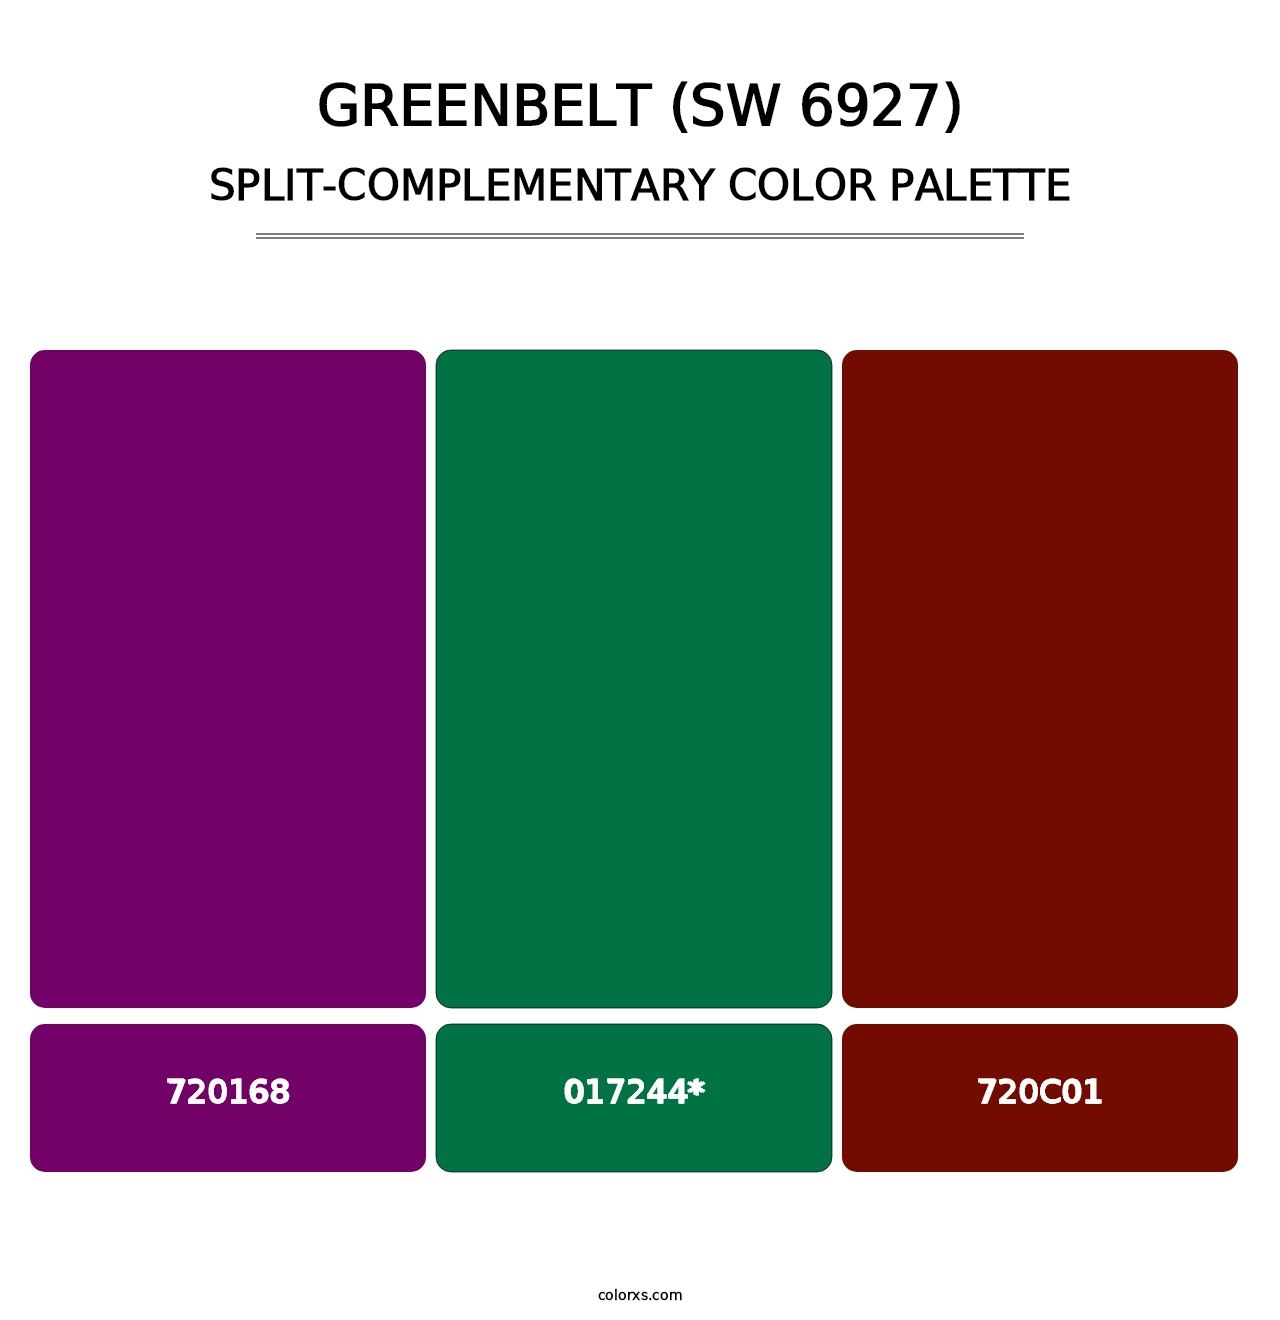 Greenbelt (SW 6927) - Split-Complementary Color Palette